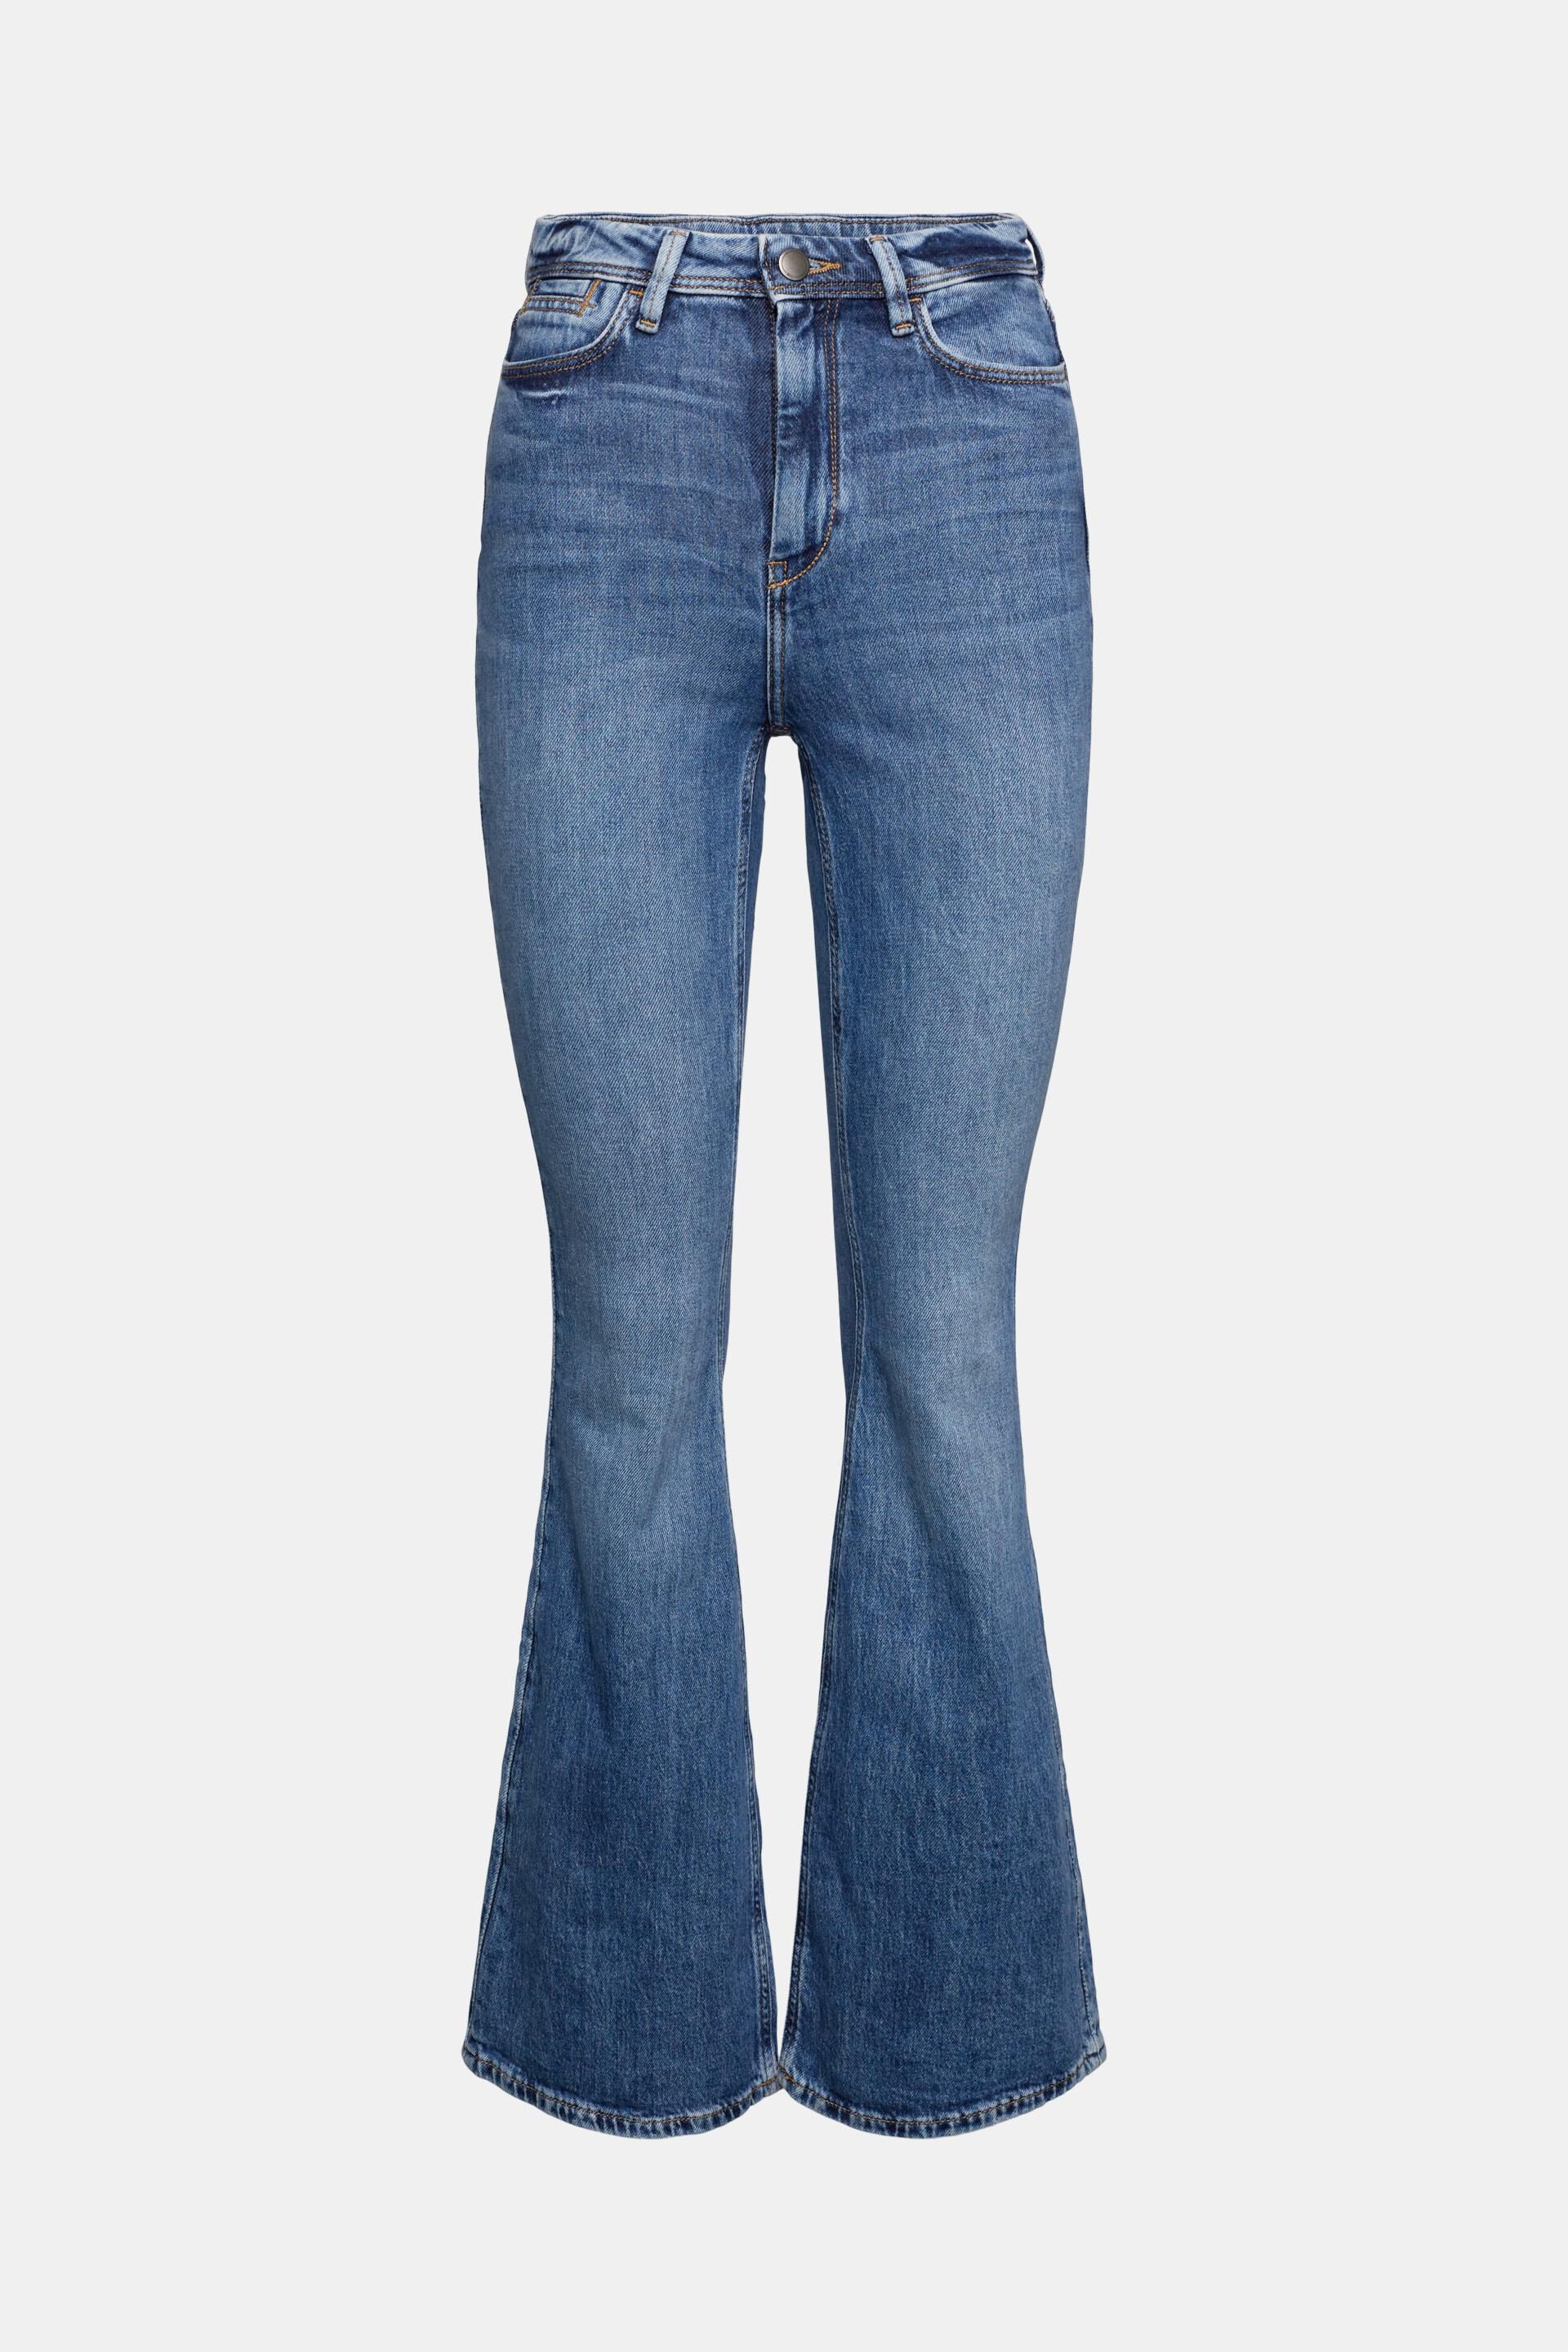 Miinto Femme Vêtements Pantalons & Jeans Jeans Bootcut jeans Flared Jeans Bleu Taille: W28 L32 Femme 